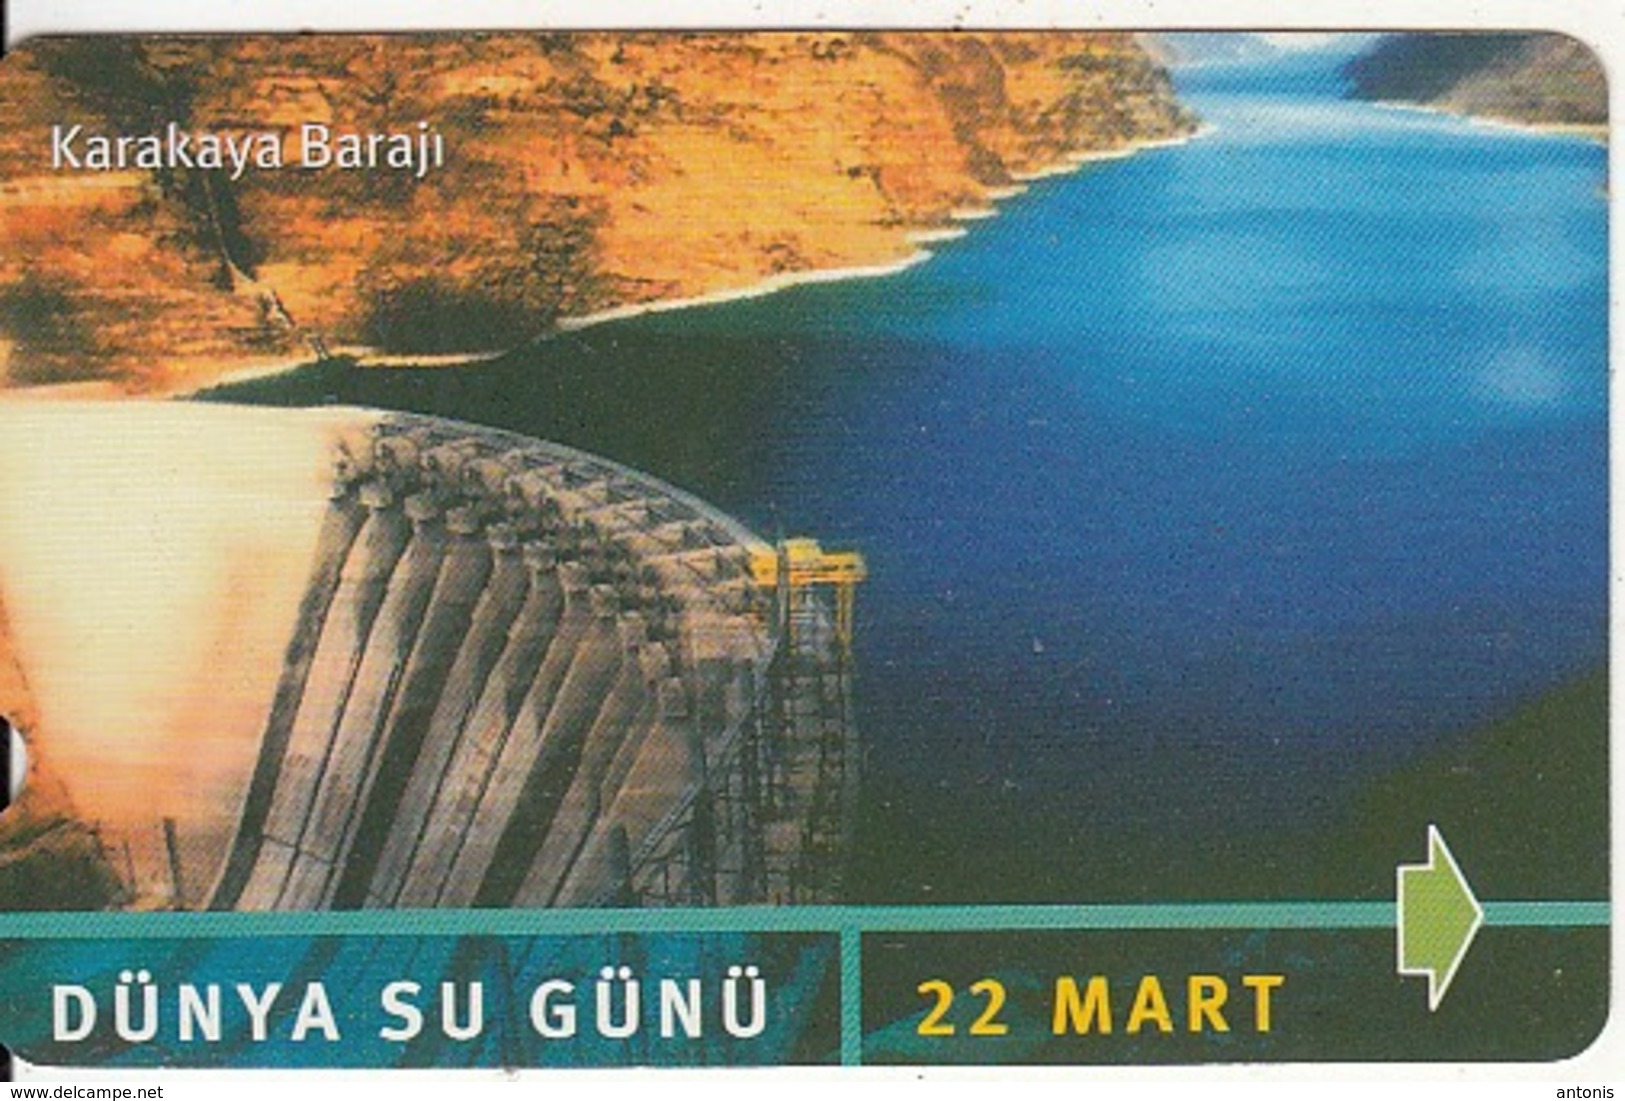 TURKEY - Dunya Su Gunu, Karakaya Baraji(30 Units), 03/02, Used - Turquia